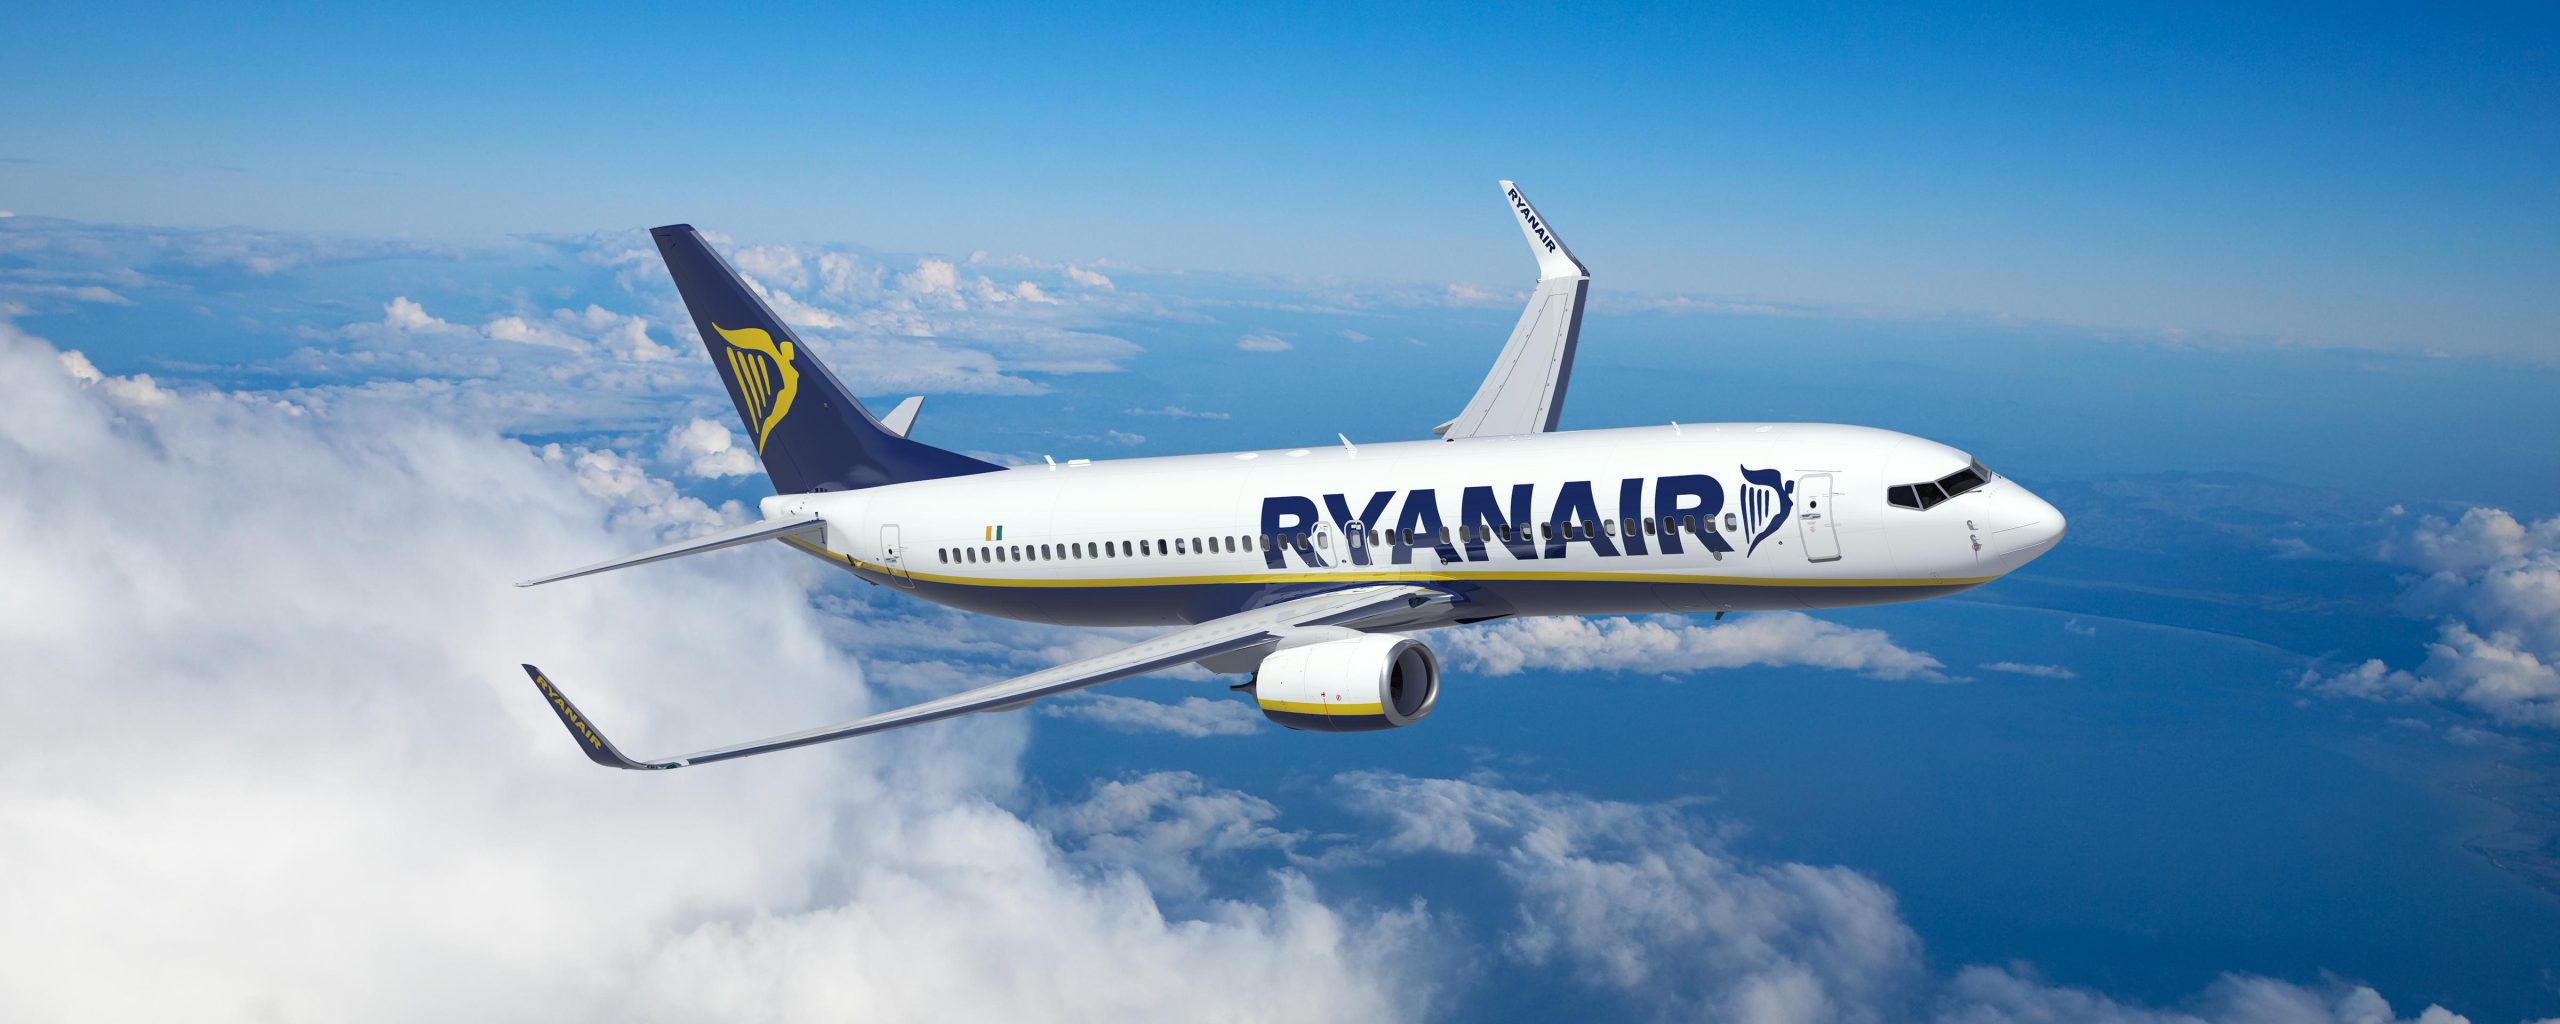 Οι εναλλακτικές λύσεις για τις ακυρώσεις των πτήσεων στην Ryanair